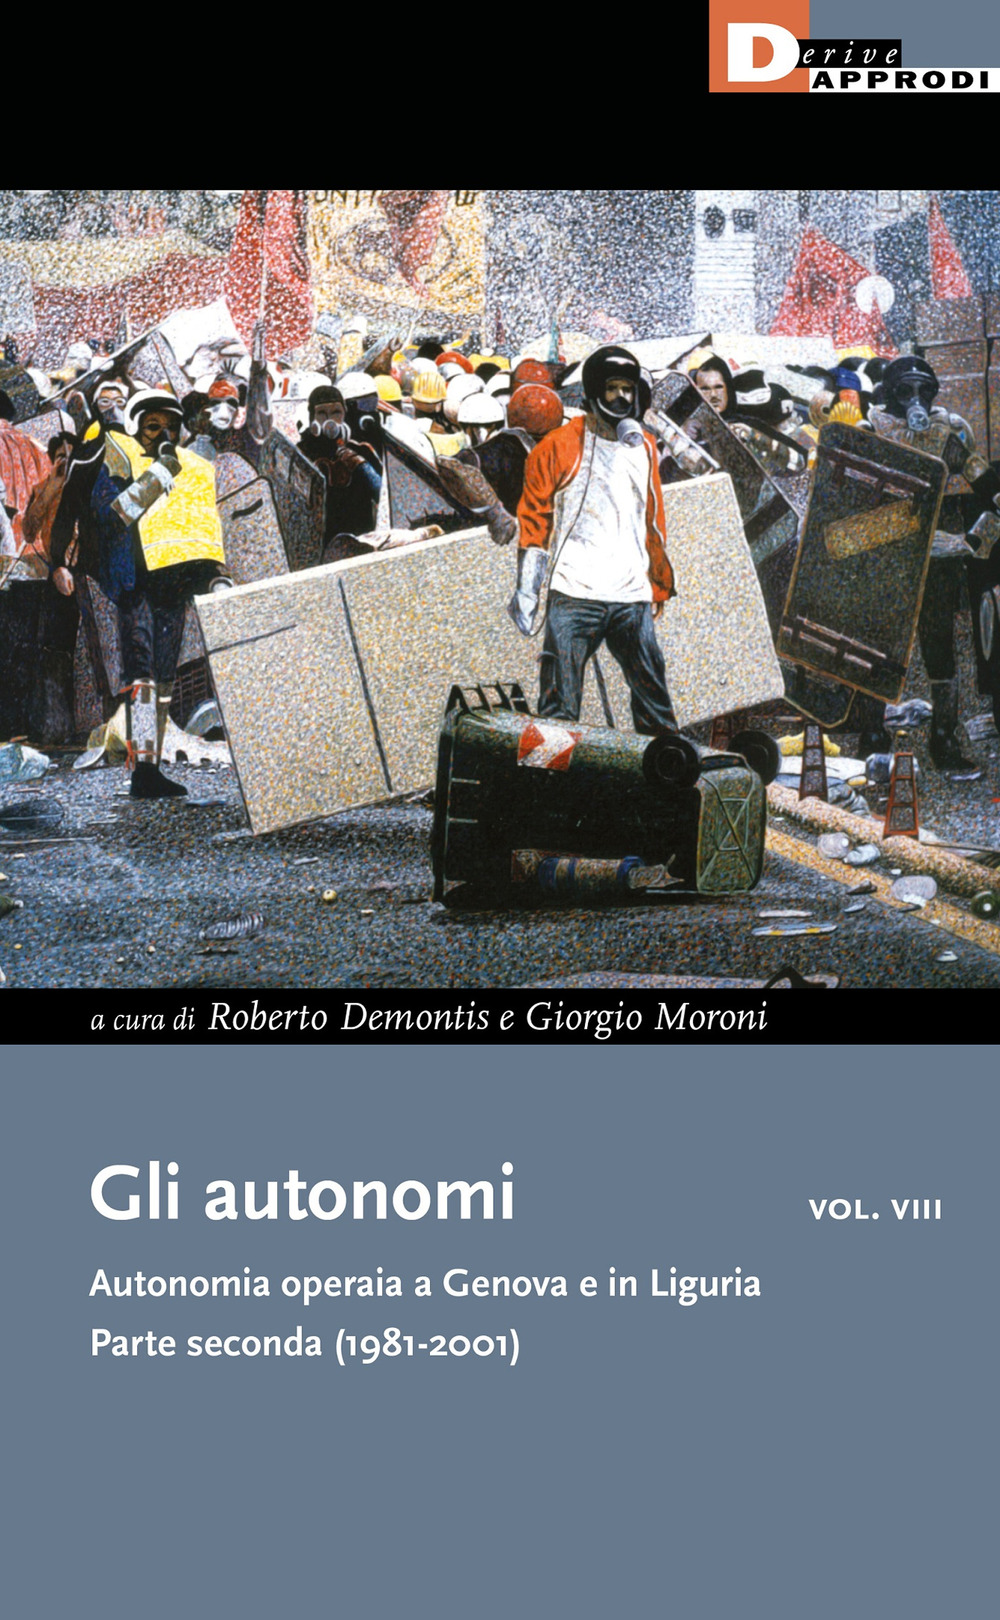 Gli autonomi vol. VIII - Autonomia operaia a Genova e in Liguria. Parte seconda (1981-2001) - 9788865483657